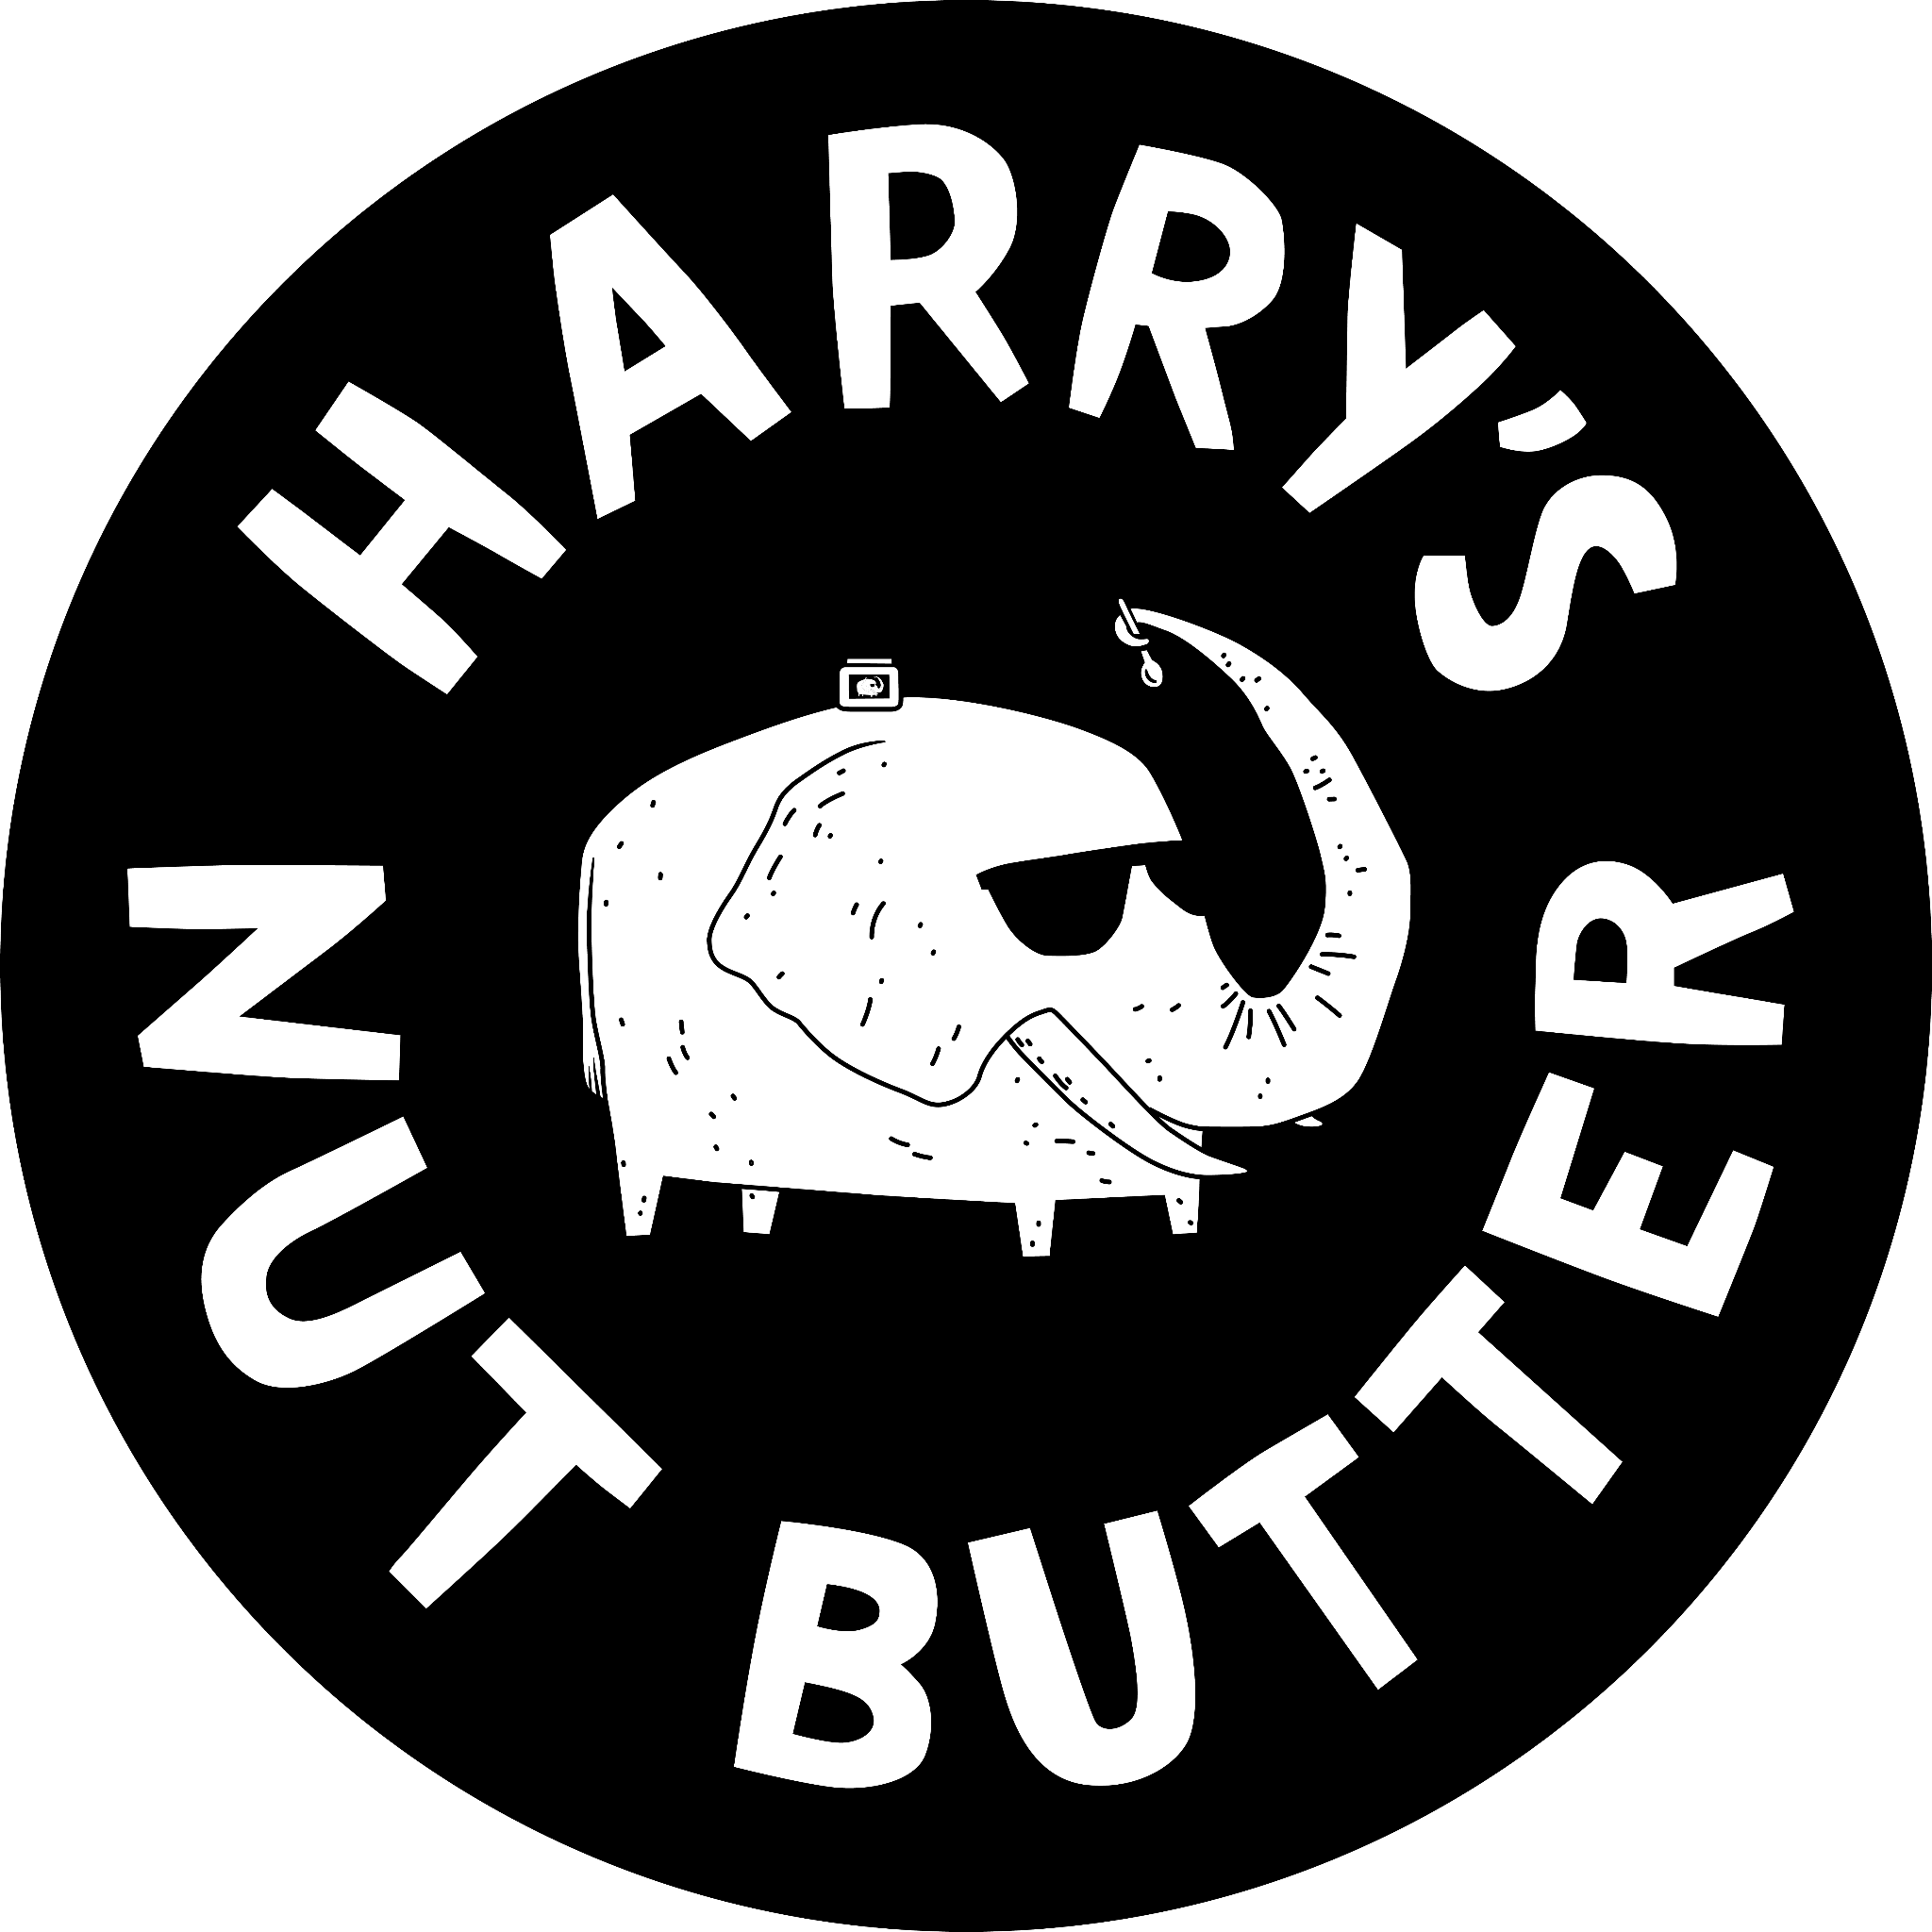 Image of Harrys Nut Butter logotype